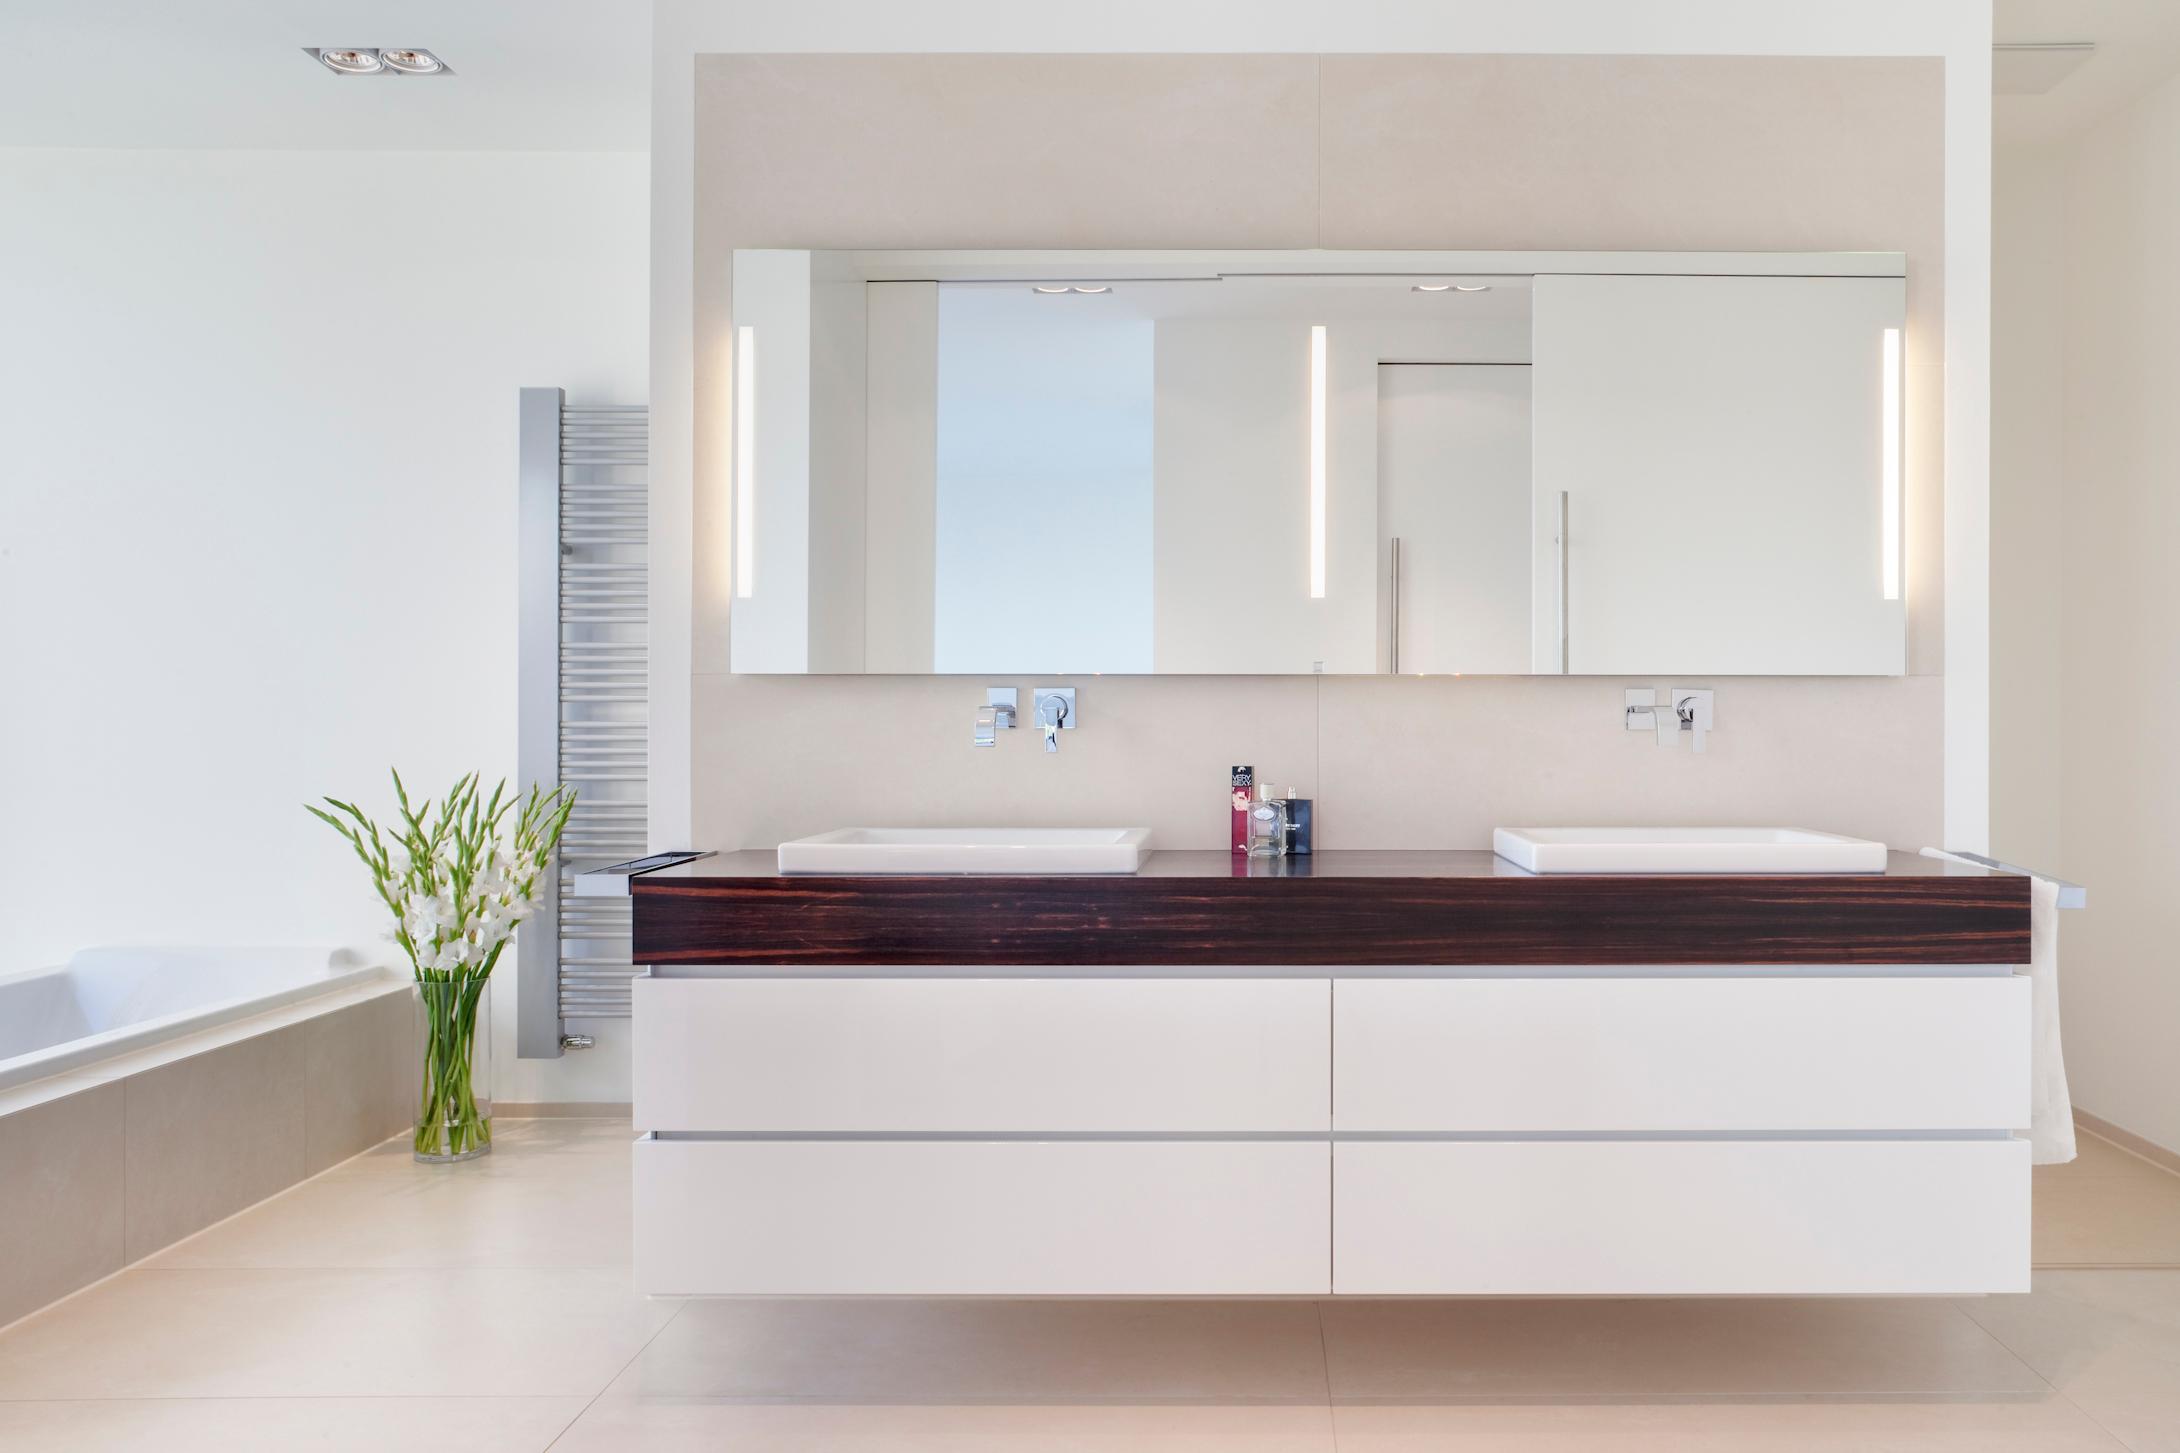 Badezimmer, individuell entworfener Waschtisch #badewanne #badezimmer #badezimmerspiegel #waschtisch #wandspiegel #doppelwaschtisch ©Skandella Architektur Innenarchitektur